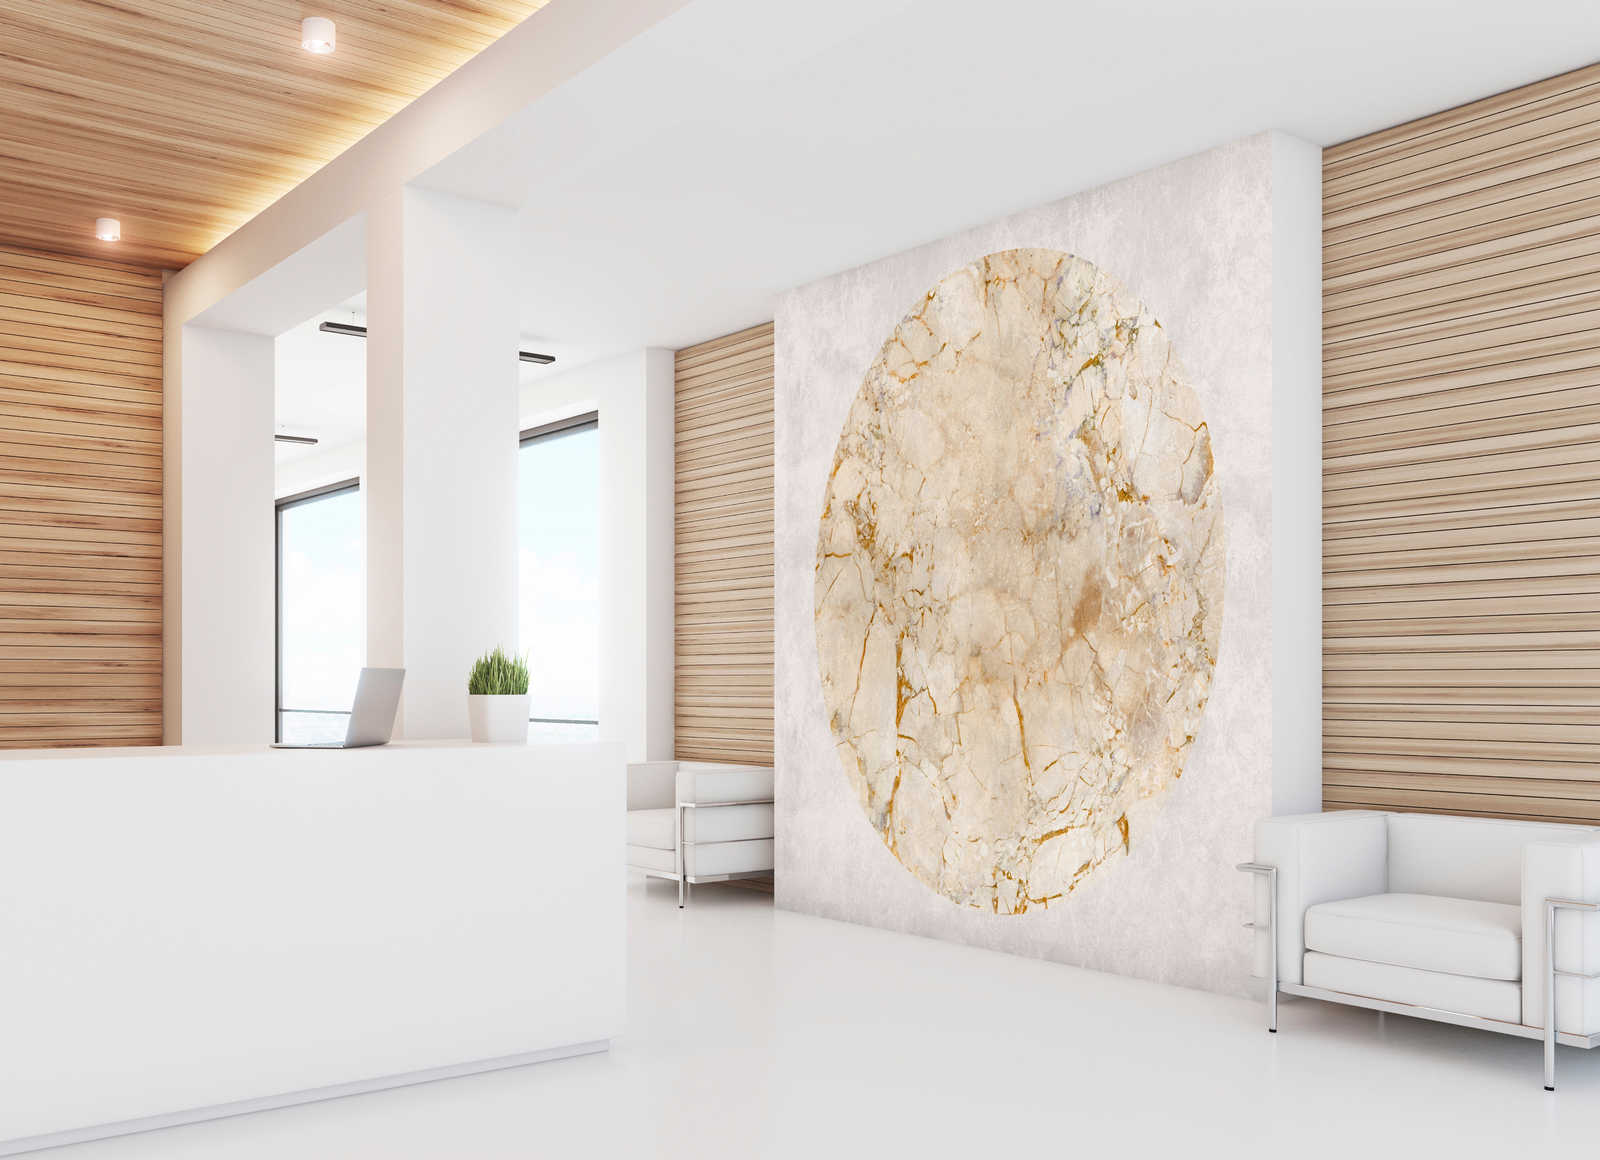             Venus 2 - papier peint marbre or motif & aspect pierre
        